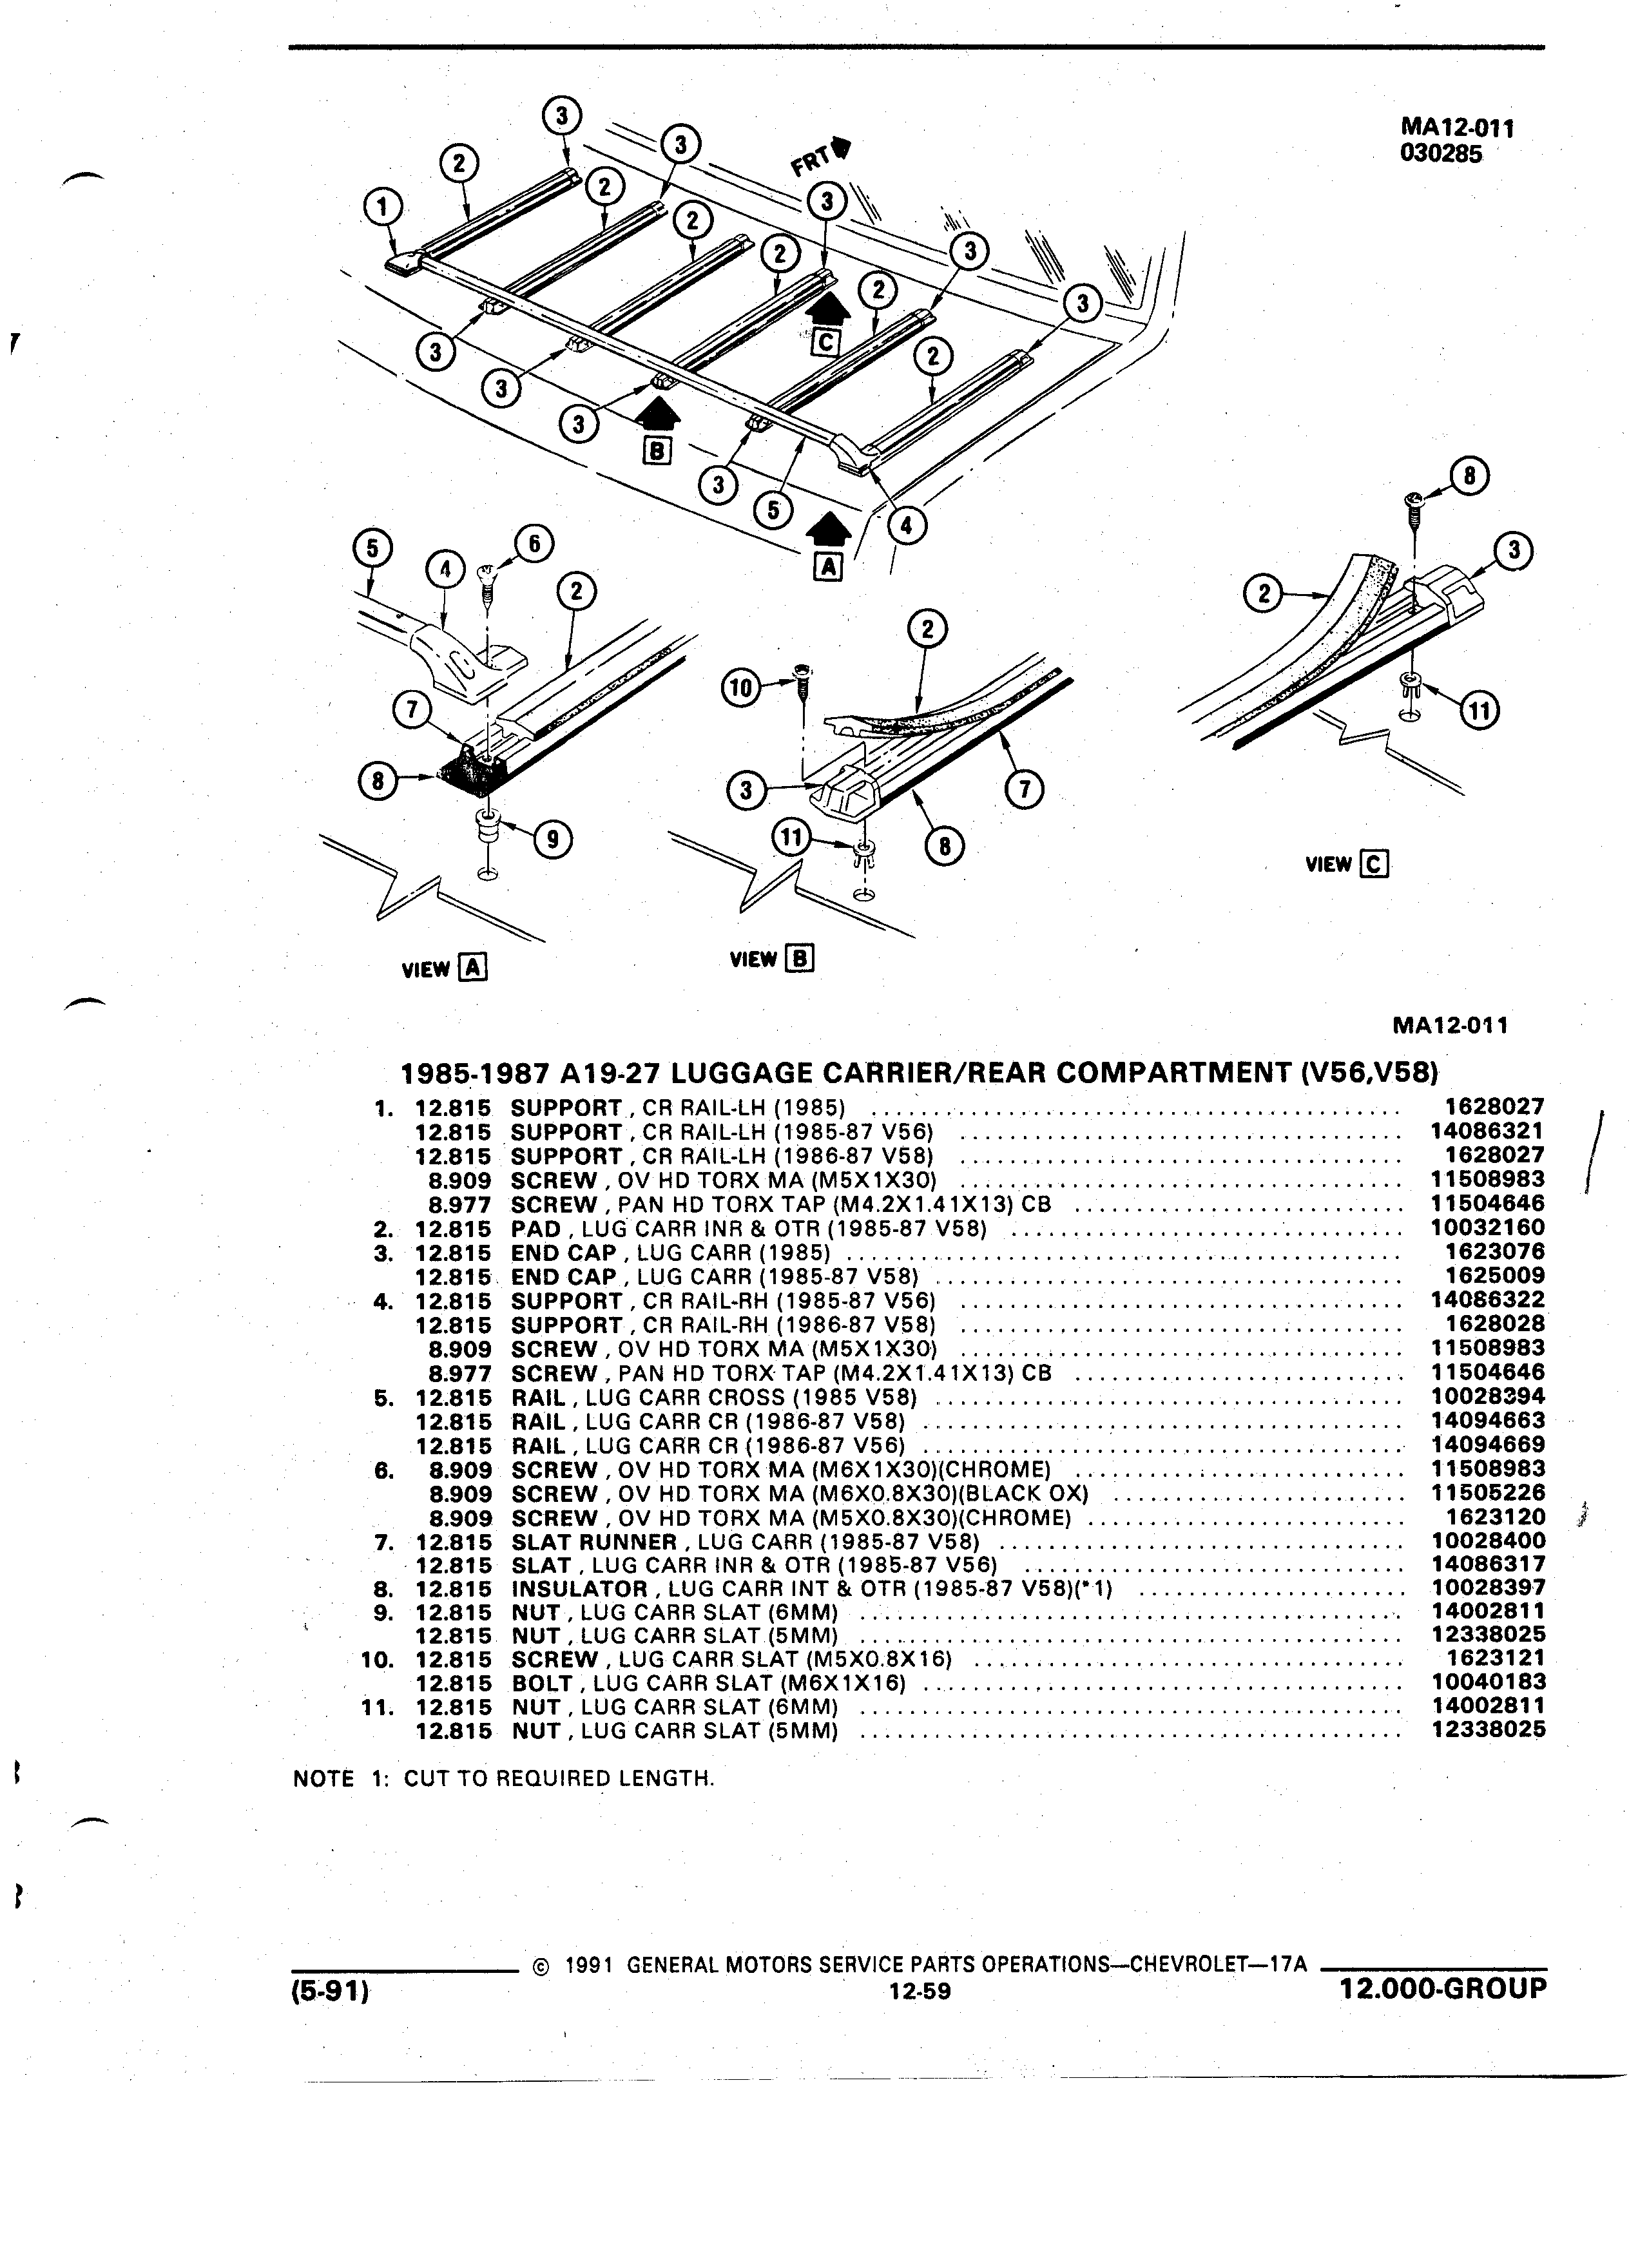 Parts and Illustration Catalog 17A May 1991